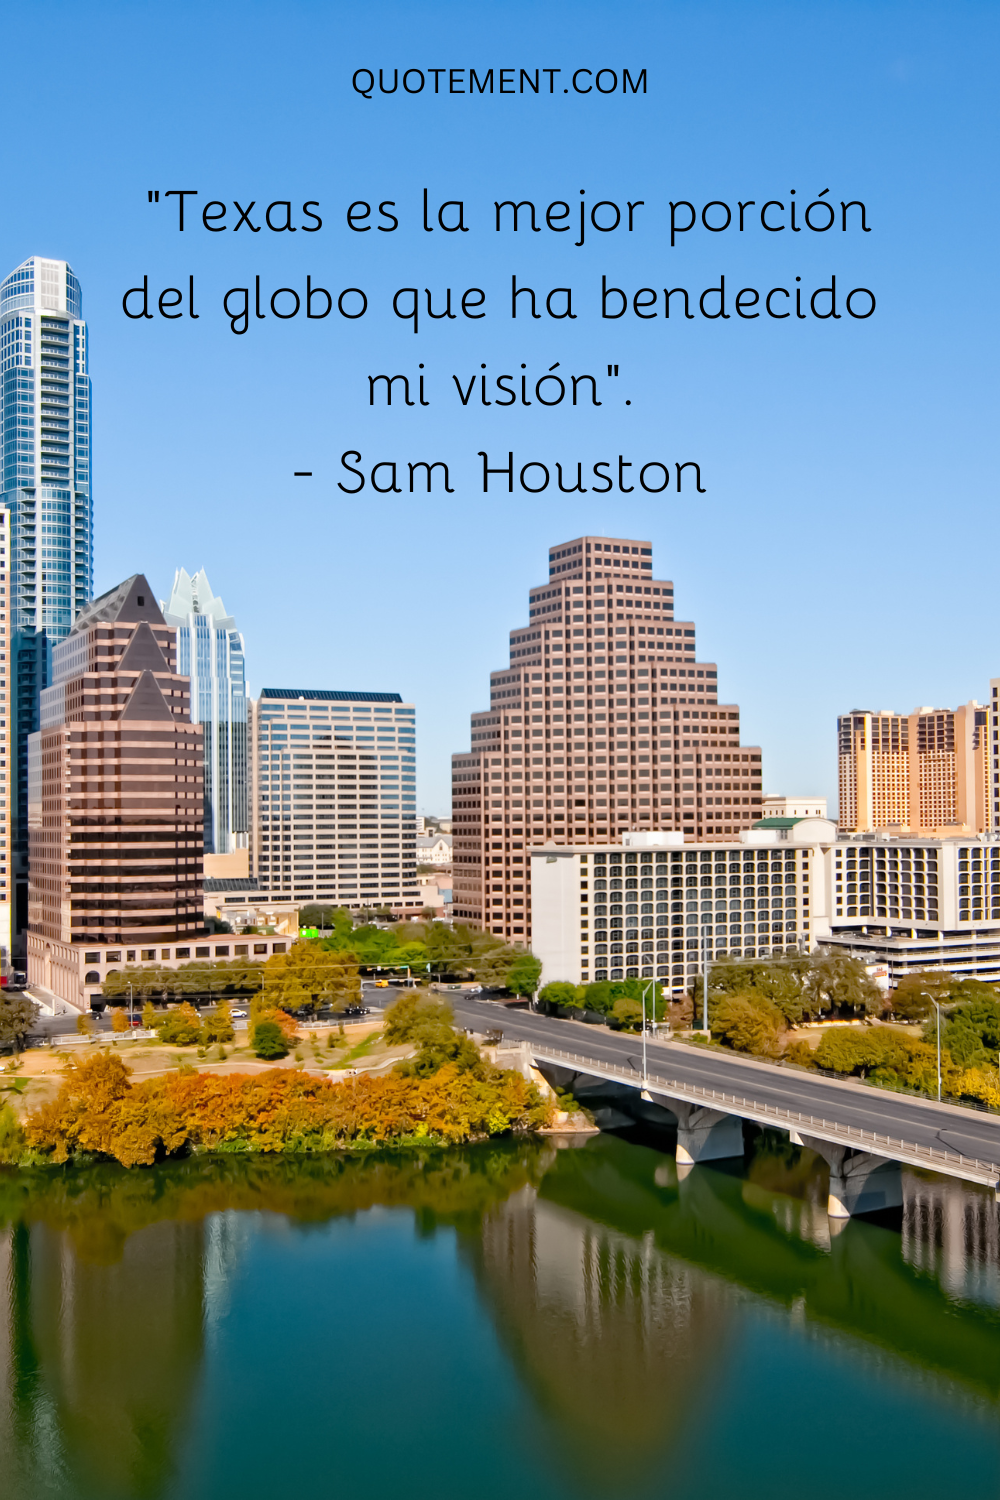 Texas es la mejor porción del globo que ha bendecido mi visión. - Sam Houston